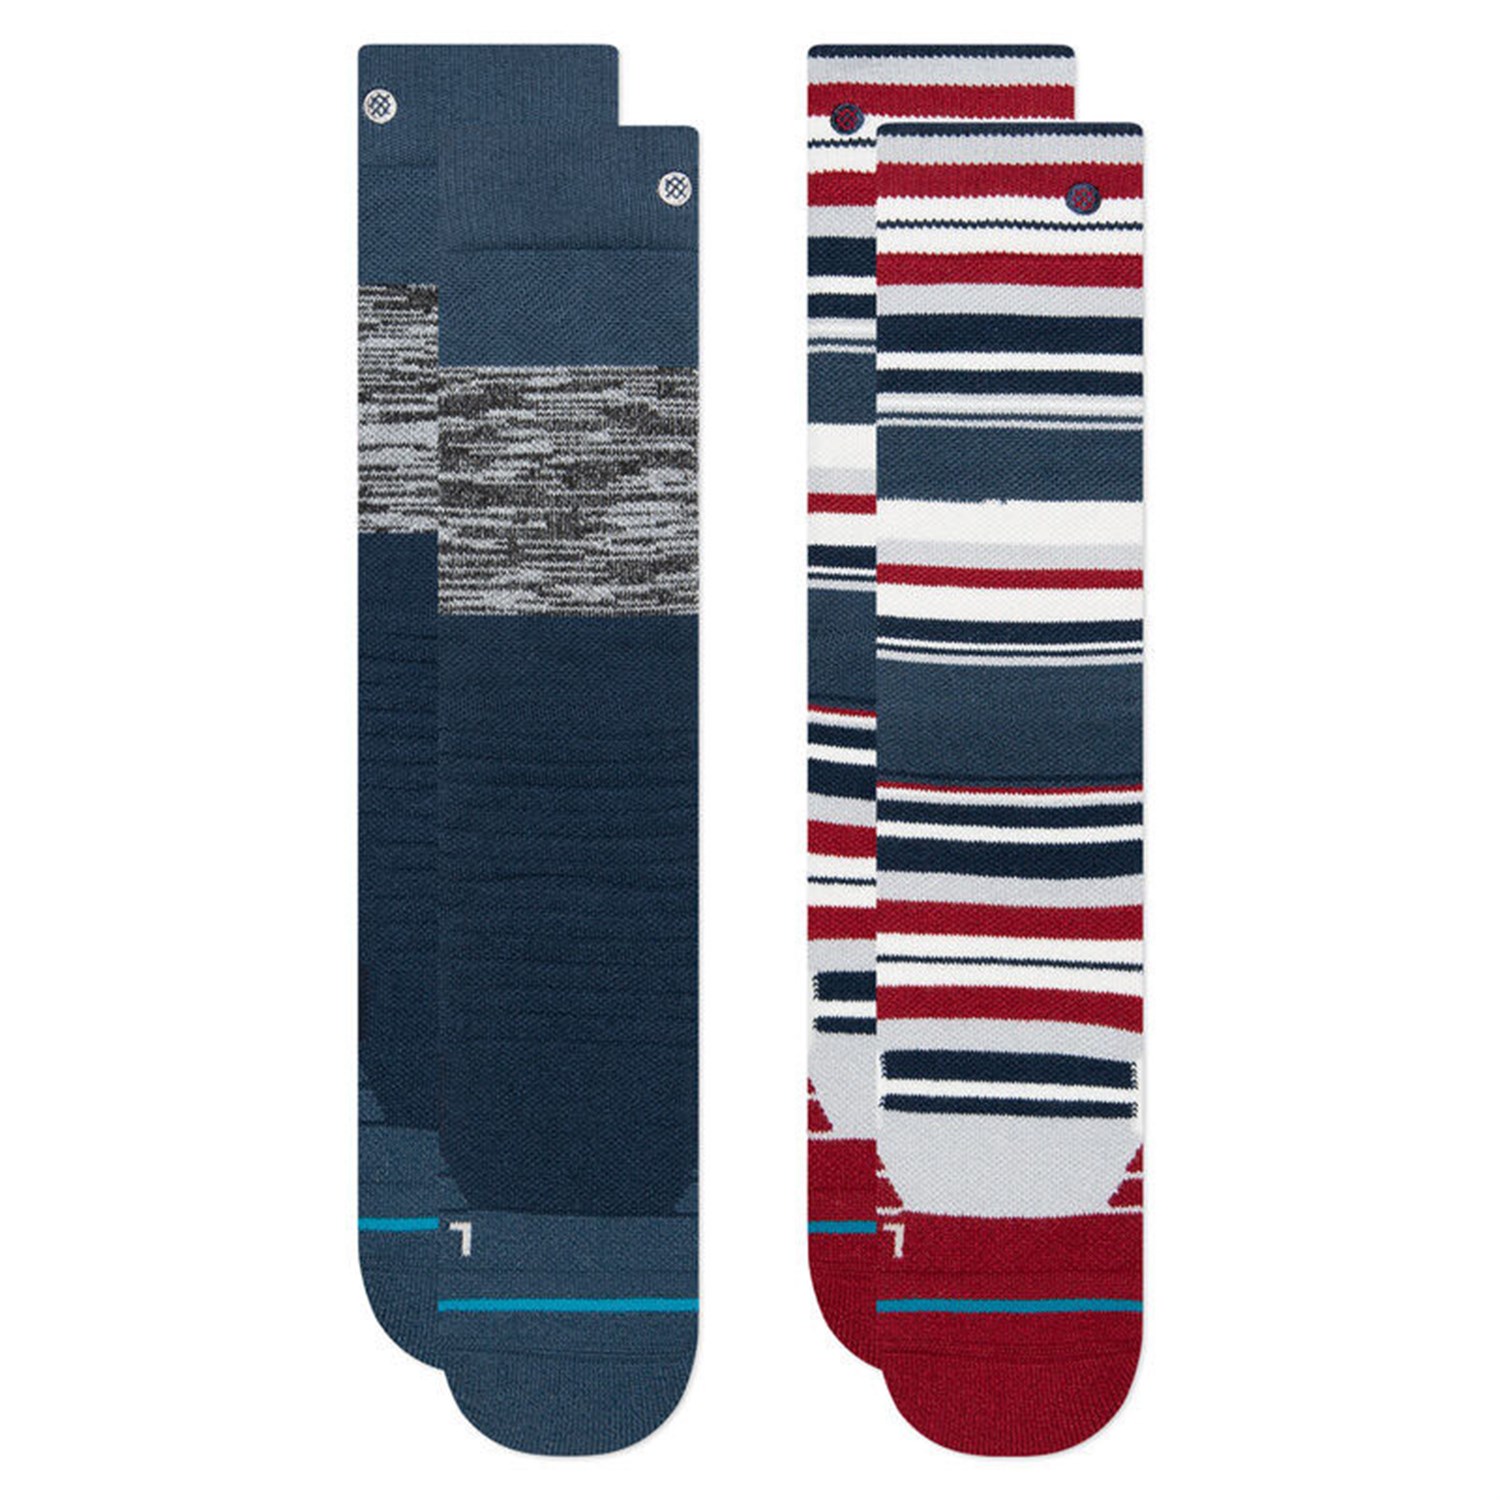 Носки Stance Block для снега детские комплект из 2 пар, синий носки artie комплект из 2 пар размер 13 14 красный синий